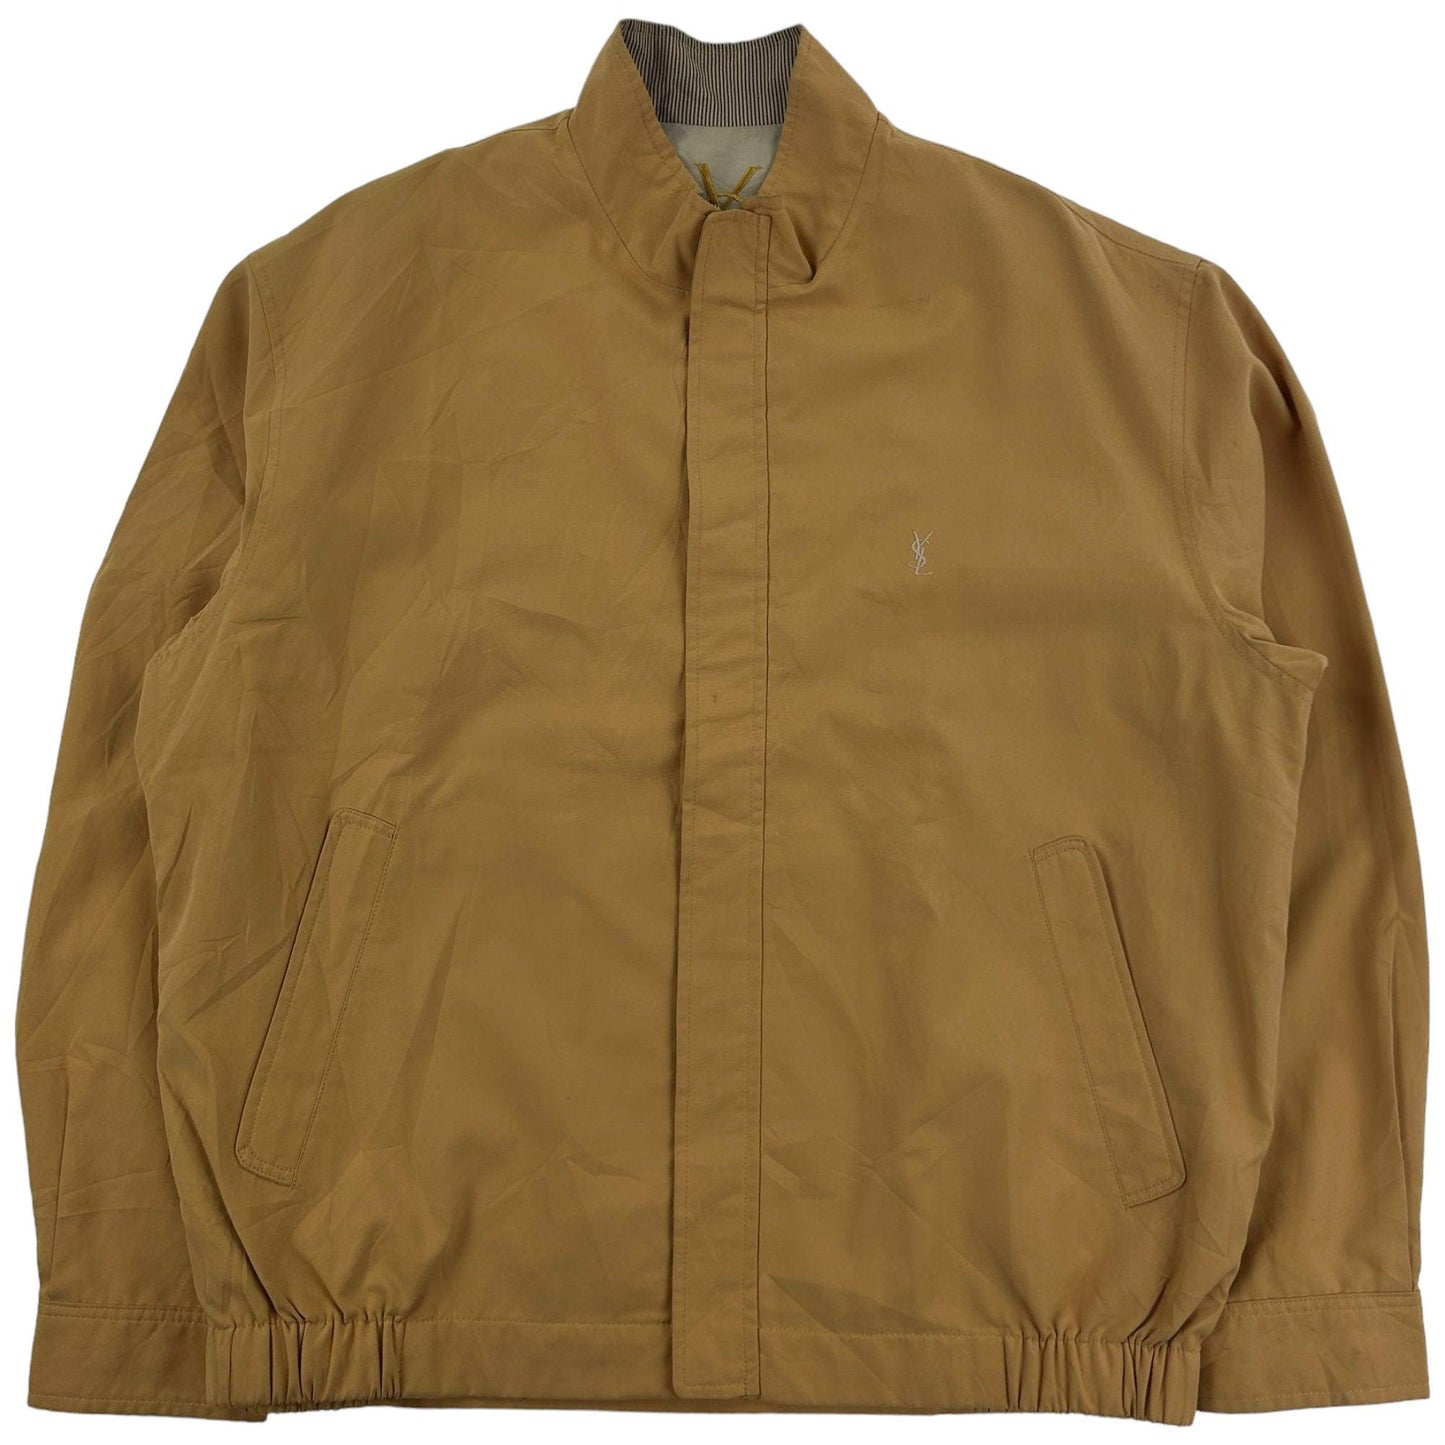 Vintage Yves Saint Laurent Harrington Jacket Size M - Known Source